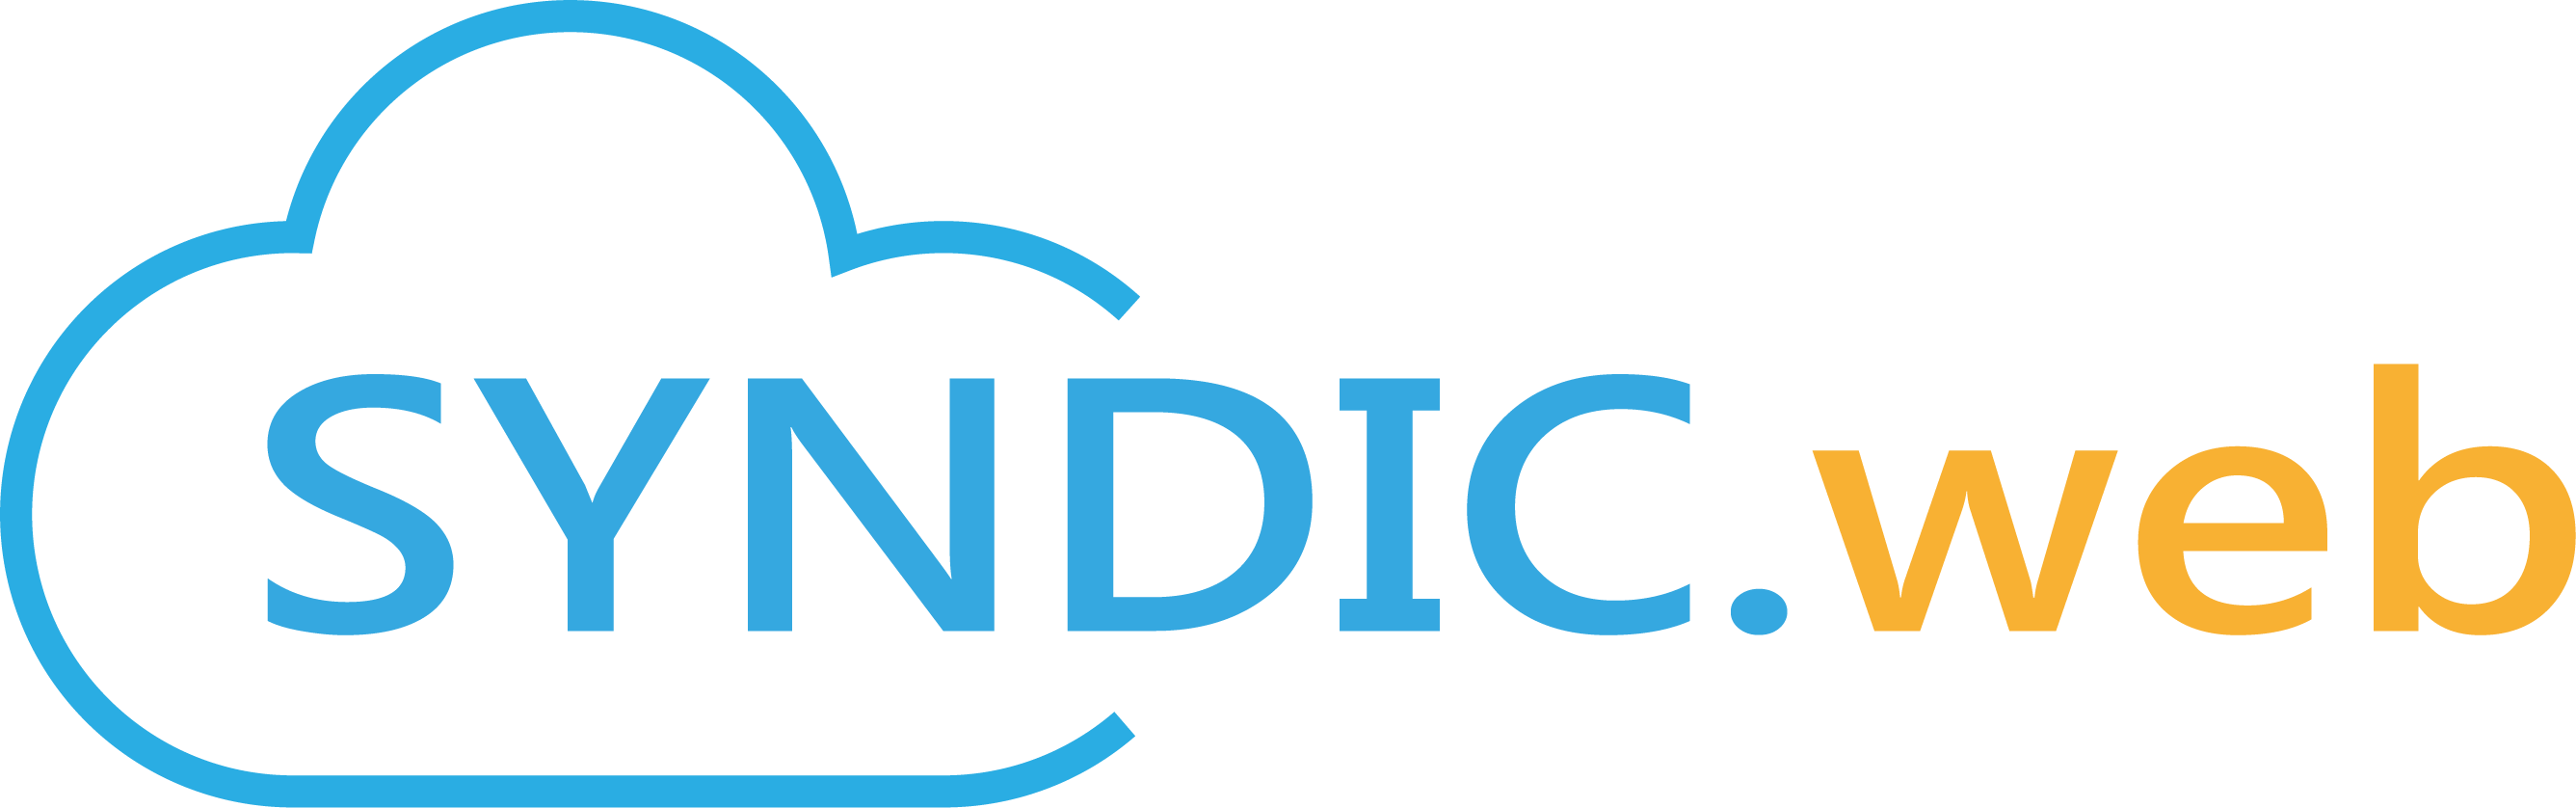 SYNDIC.web - Software voor de syndicus - Online delen van documenten